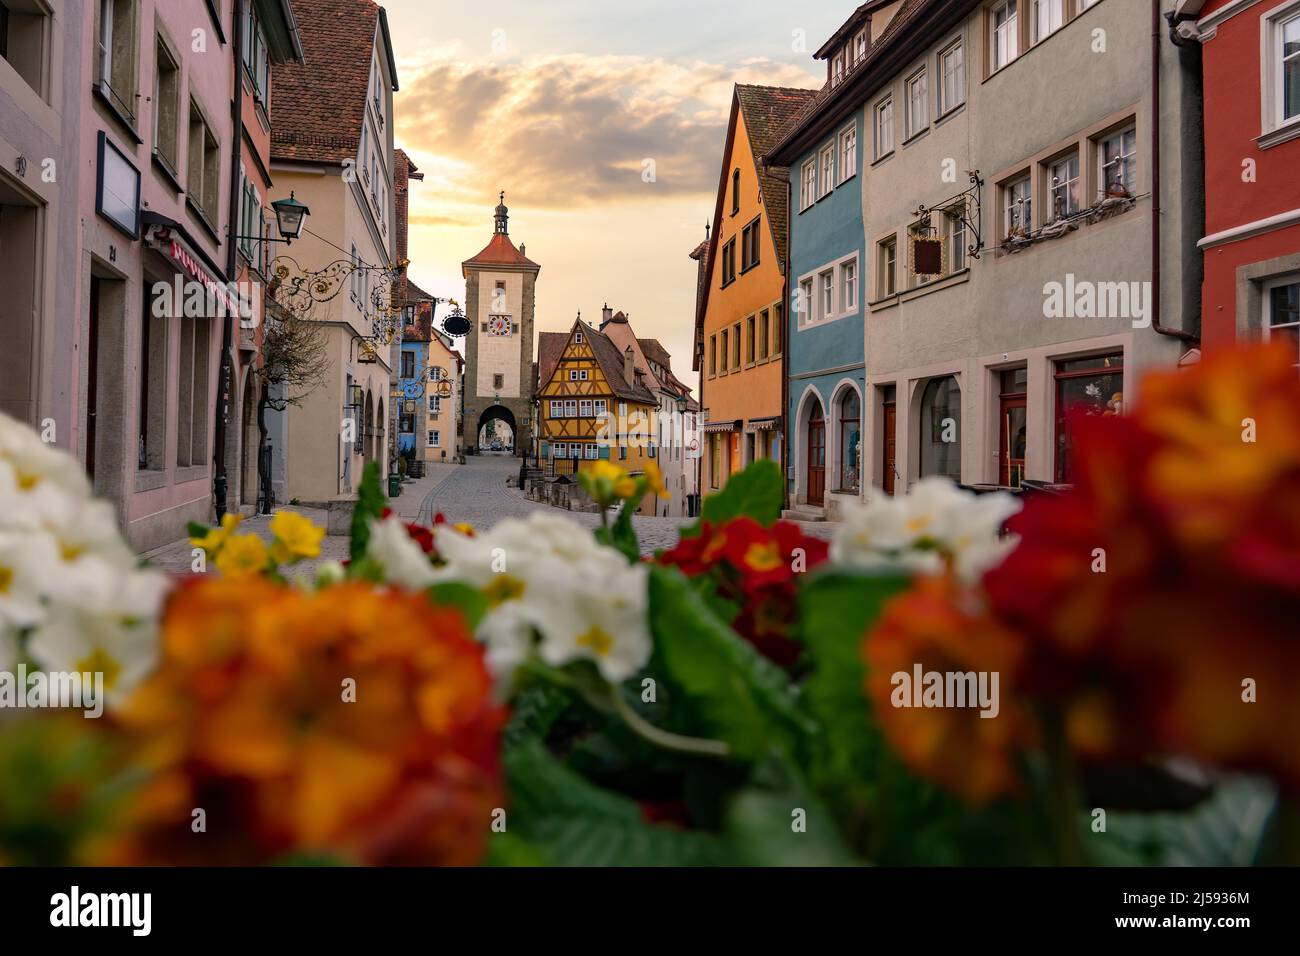 Romantique Rothenburg ob der Tauber dans la soirée avec des springflowers Banque D'Images